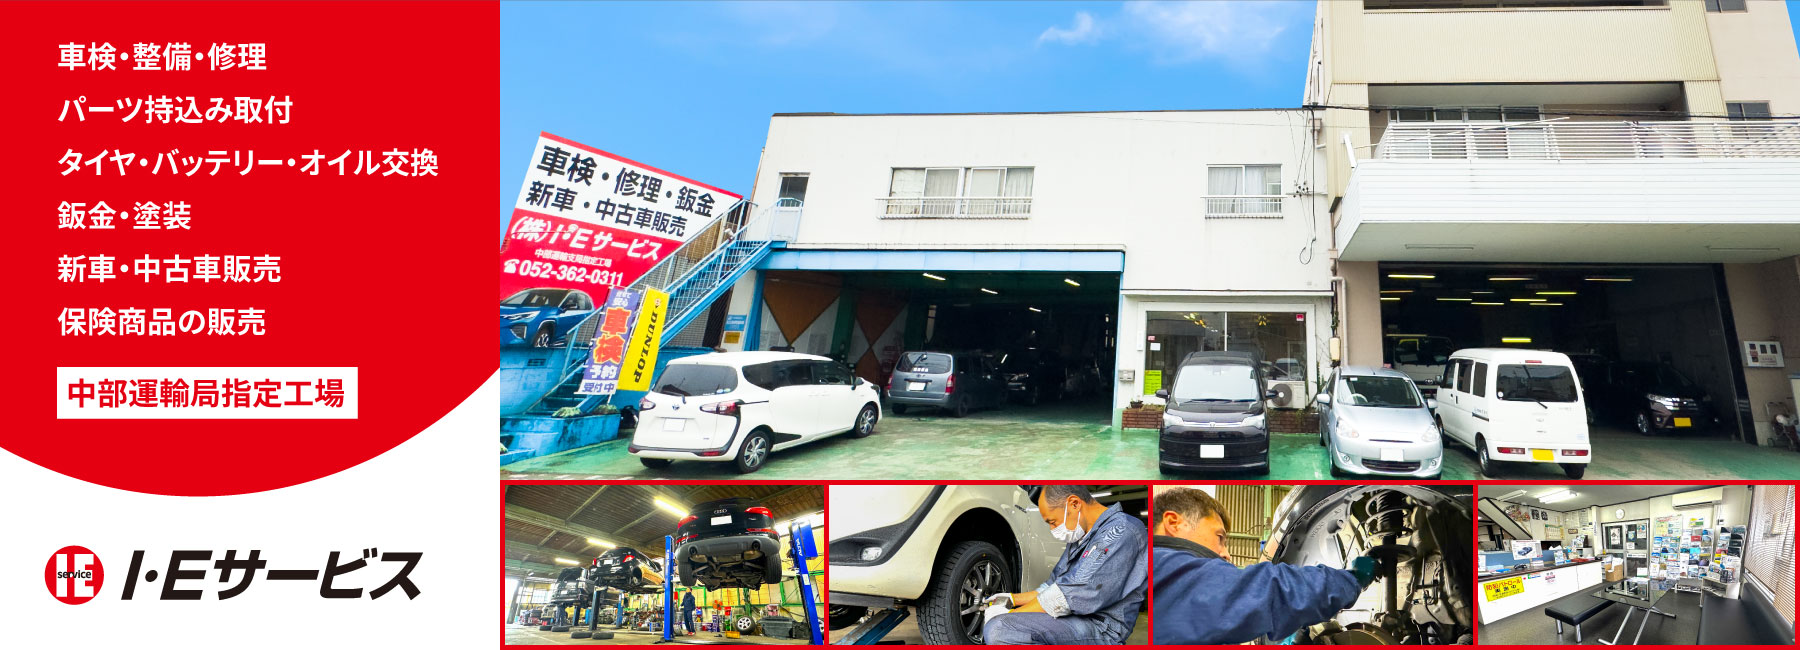 名古屋市中川区の自動車整備、中部運輸局指定工場 I・Eサービス